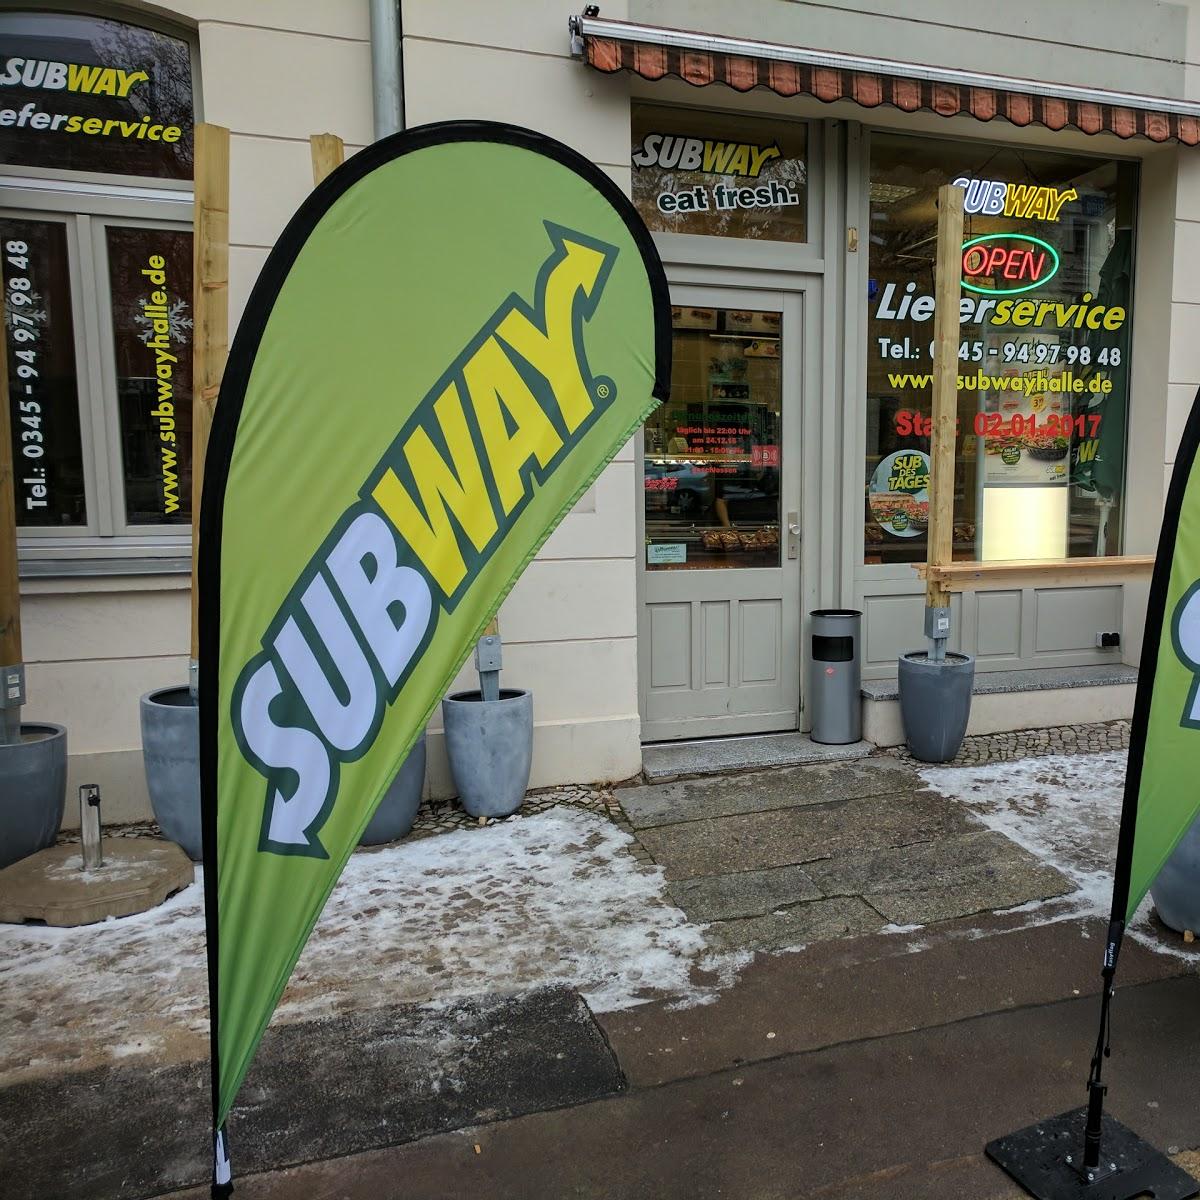 Restaurant "Subway" in Halle (Saale)